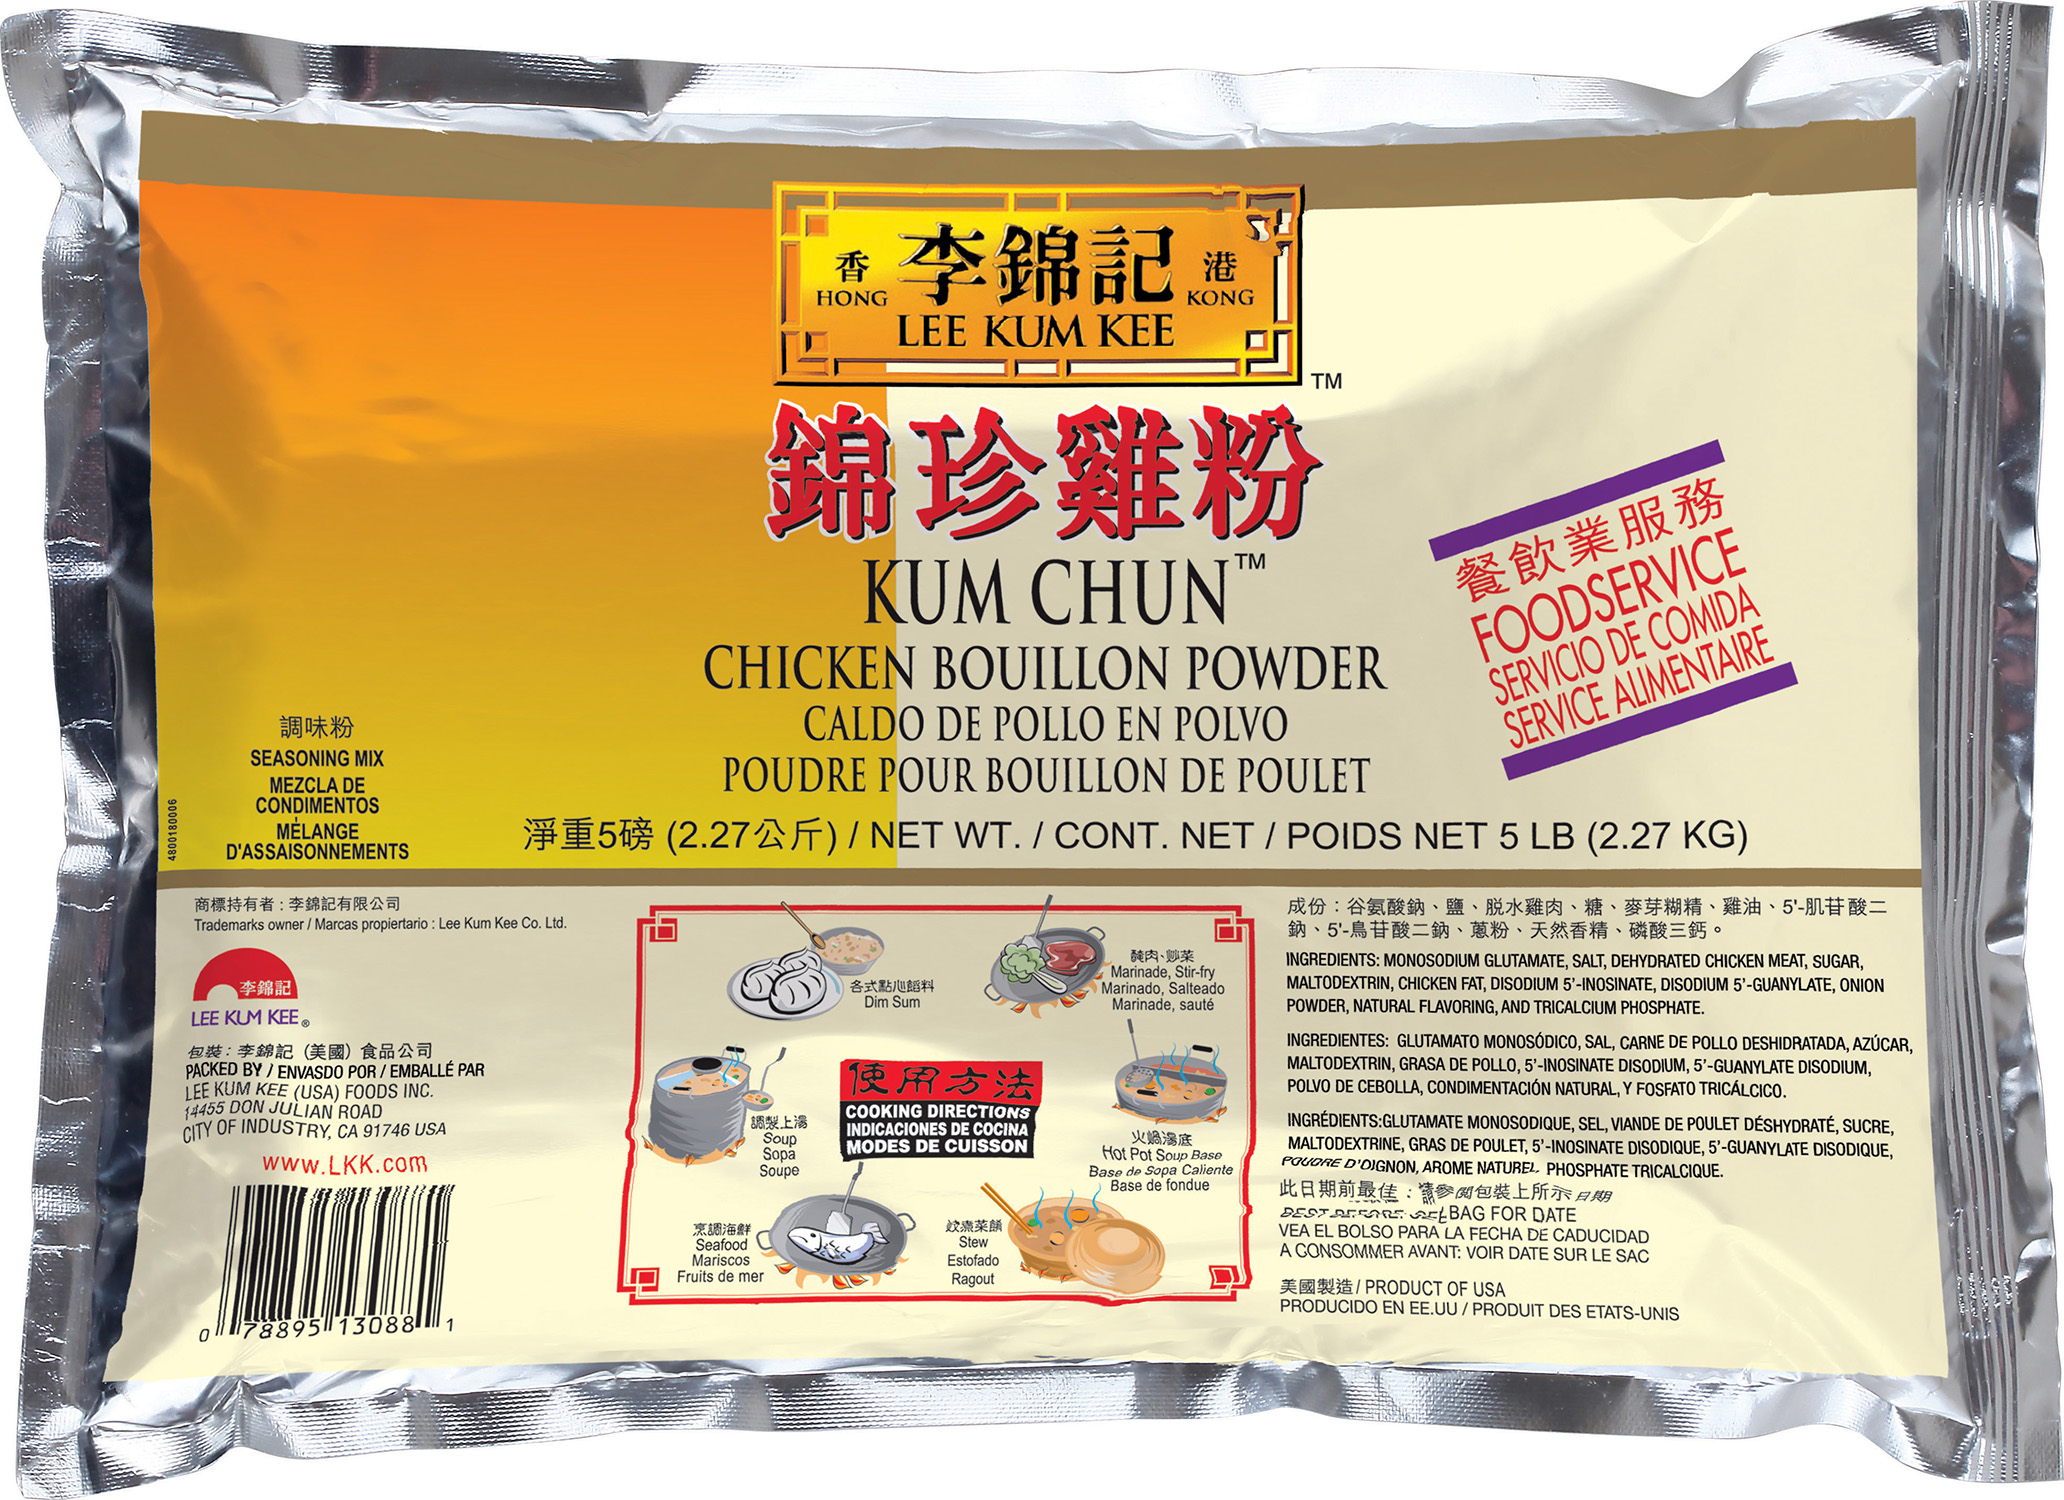 Kum Chun Chicken Bouillion Powder 5lb Bag 